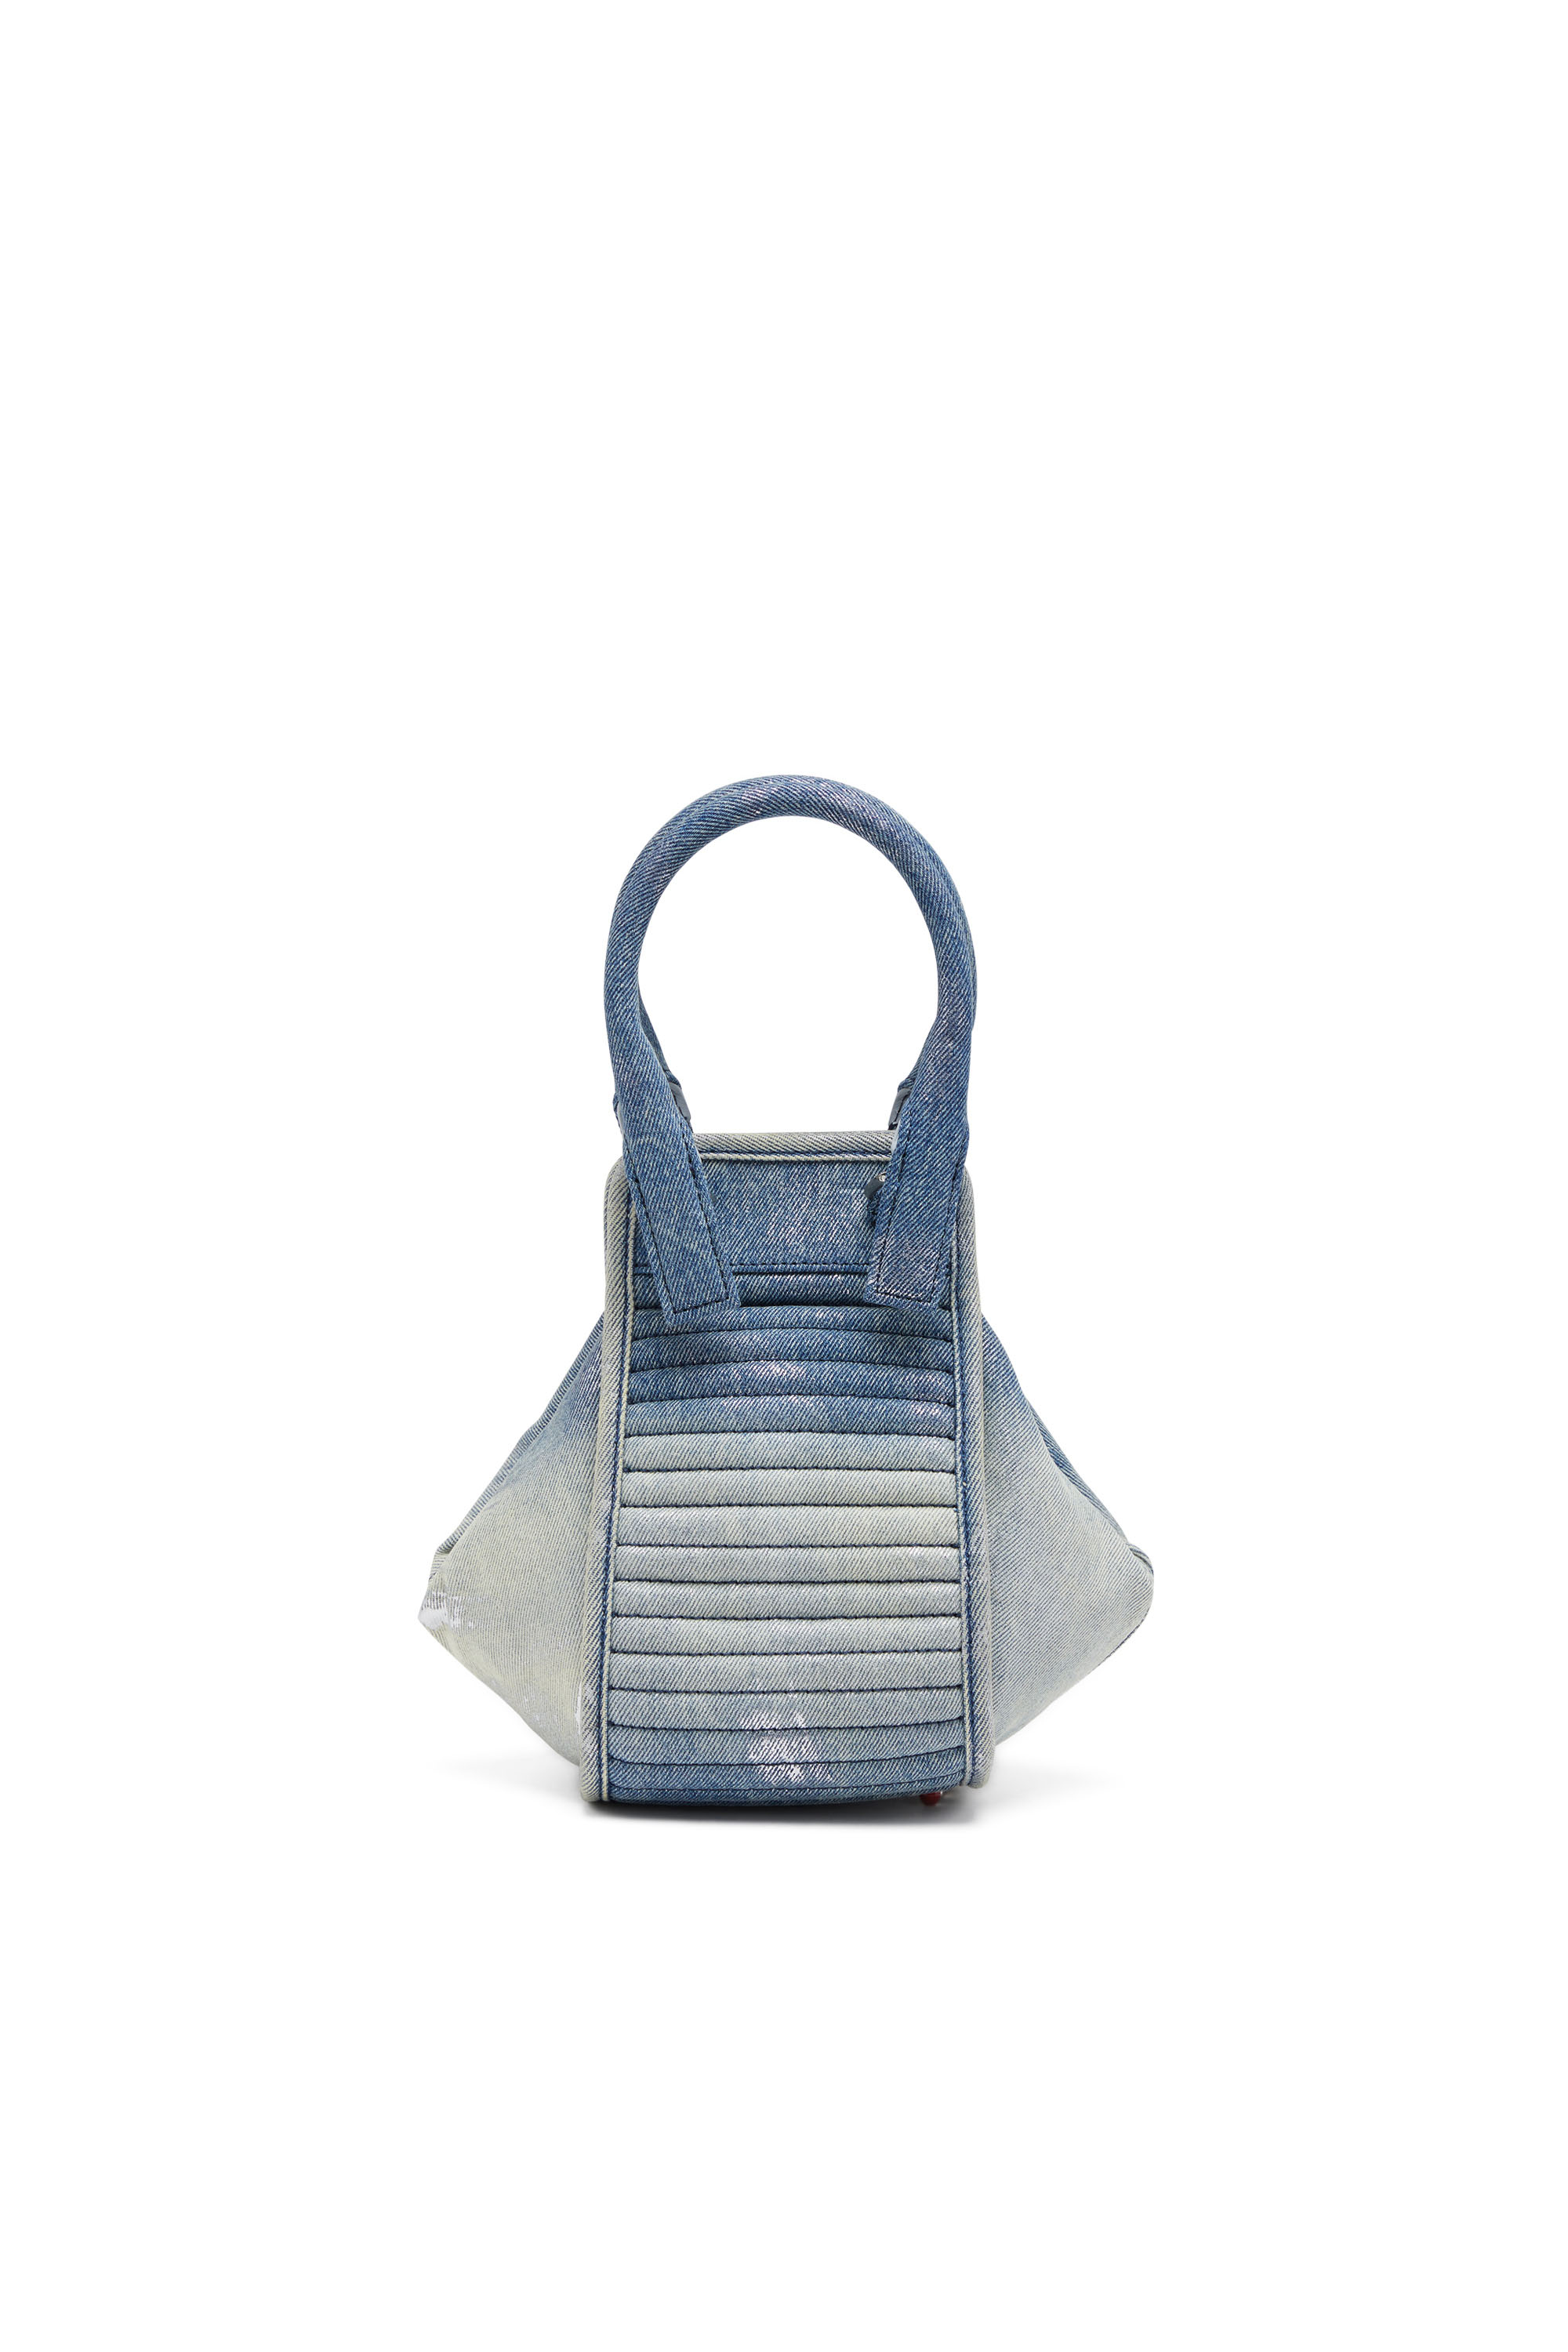 Diesel - D-VINA-XS, Damen D-Vina-Xs-Handtasche aus reflektierendem, solarisiertem Denim in Blau - Image 2